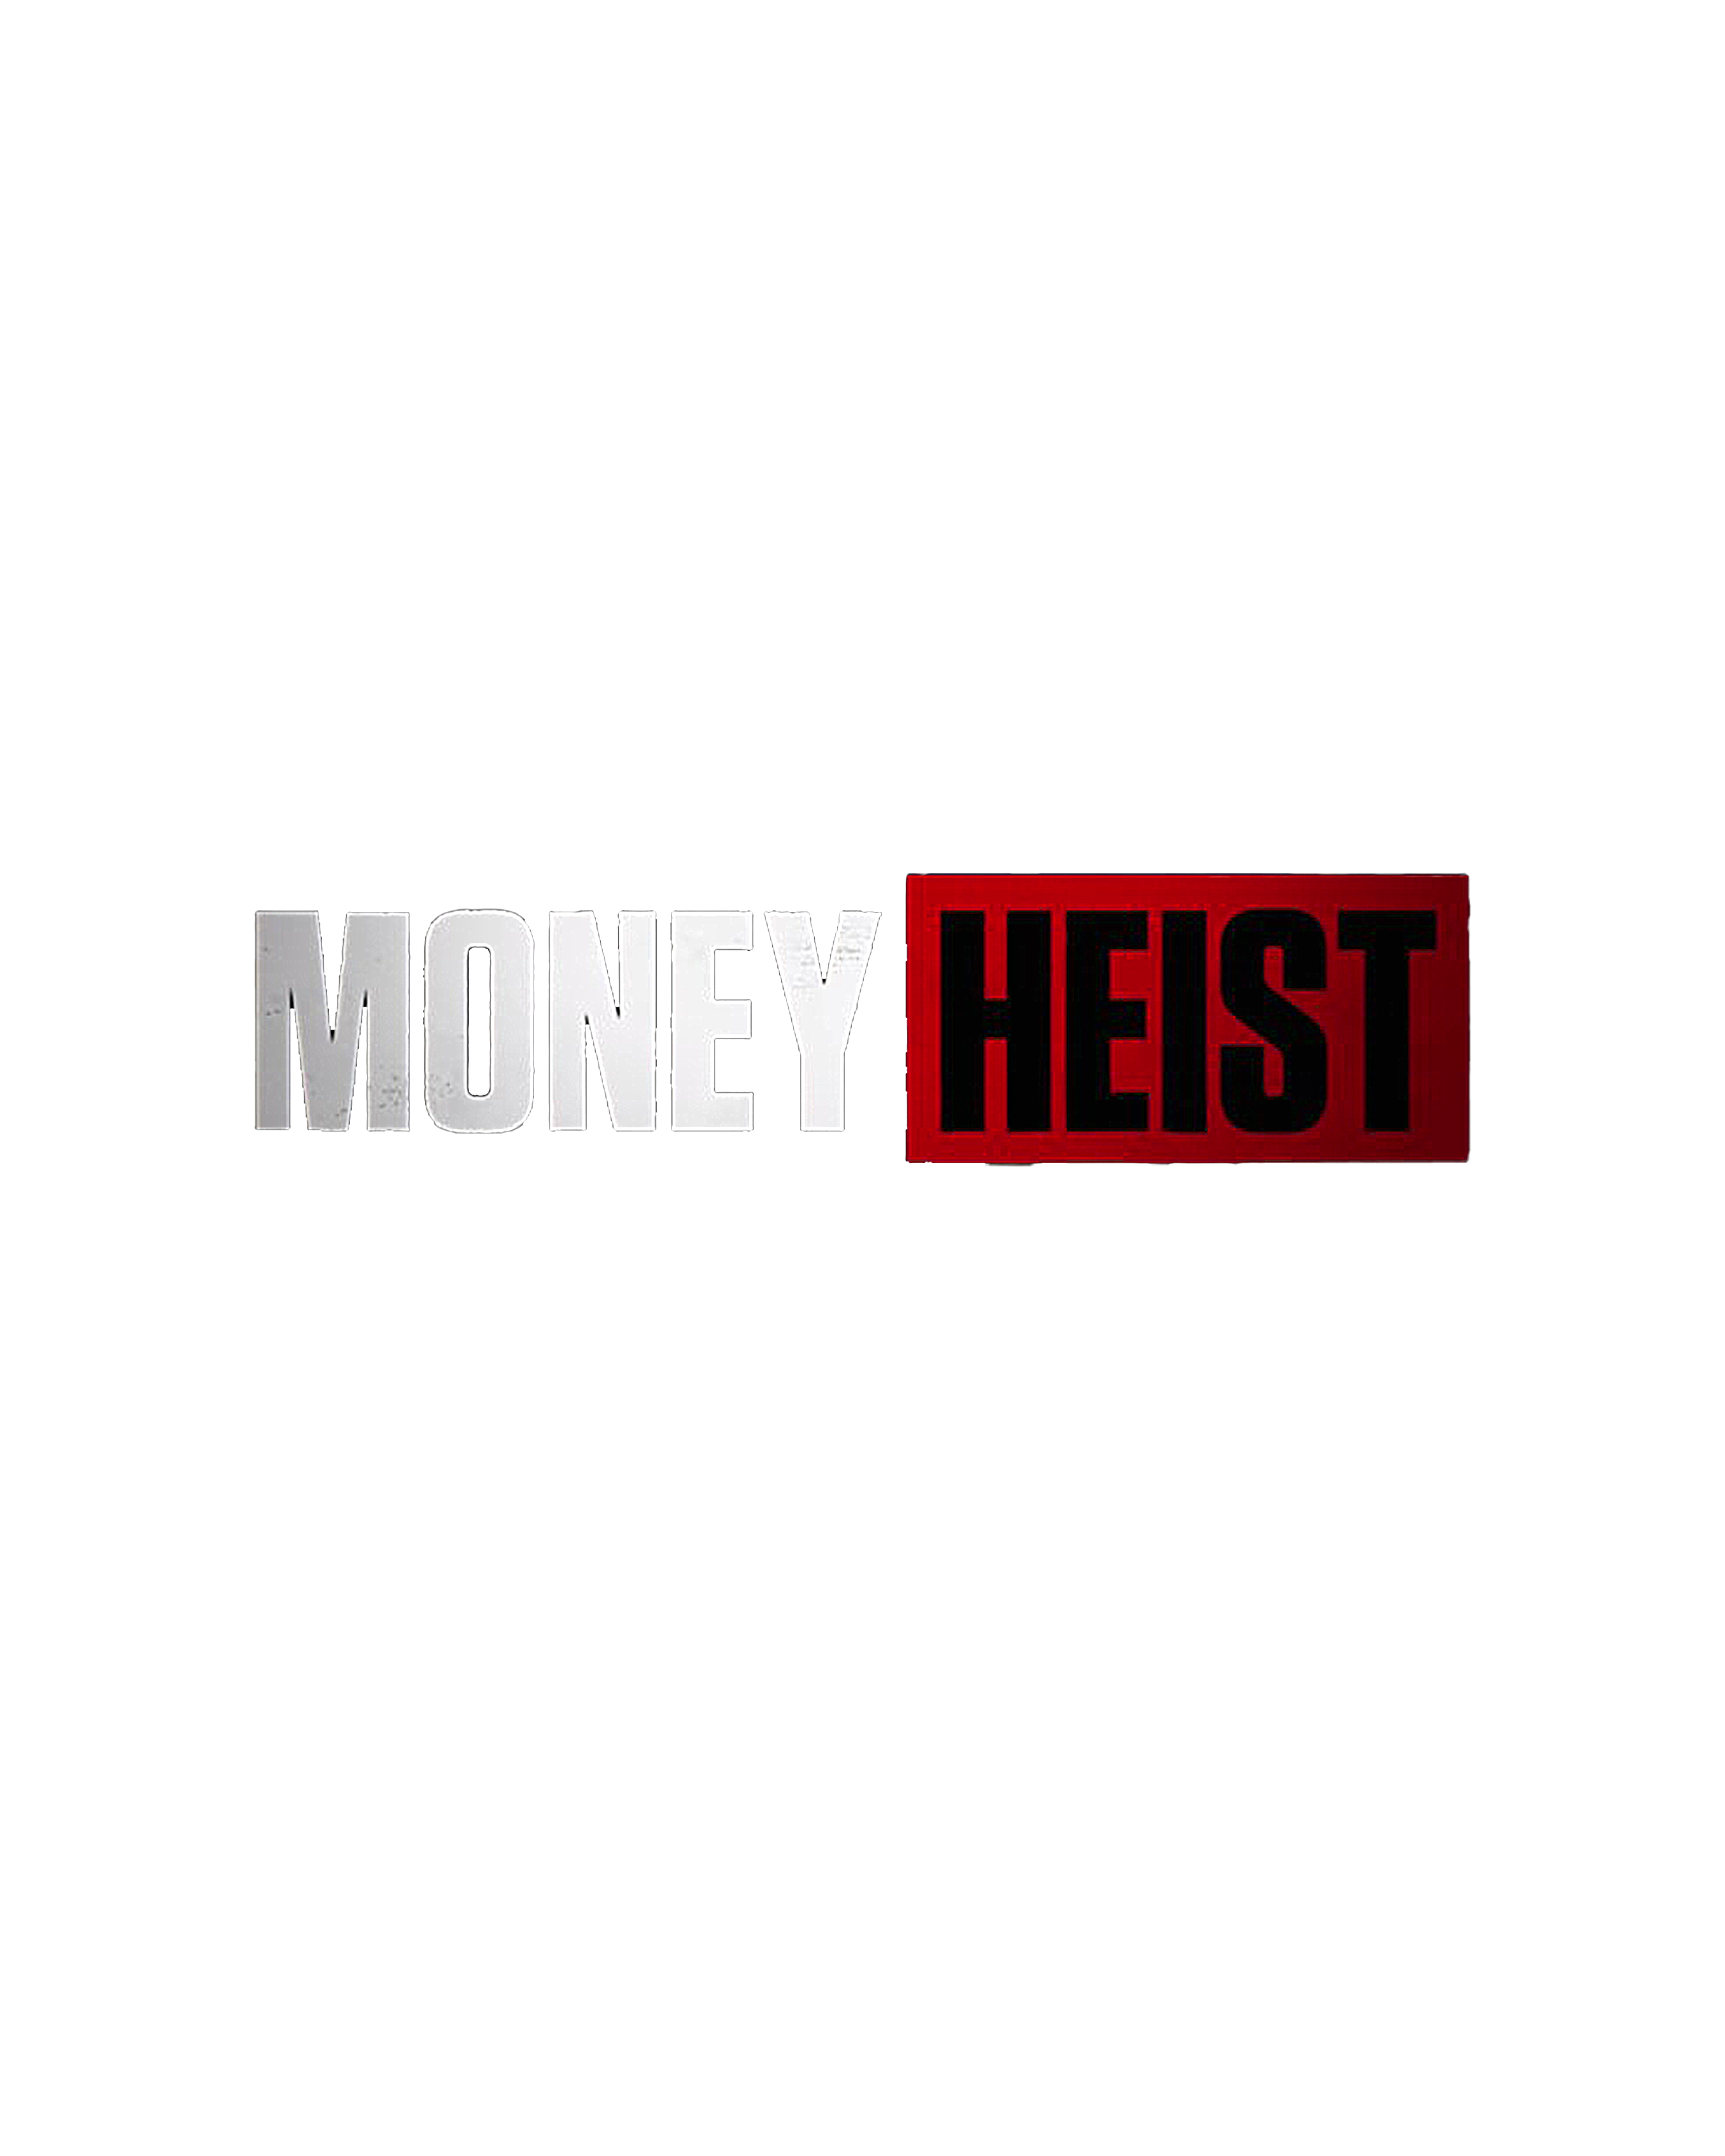 Money heist text png